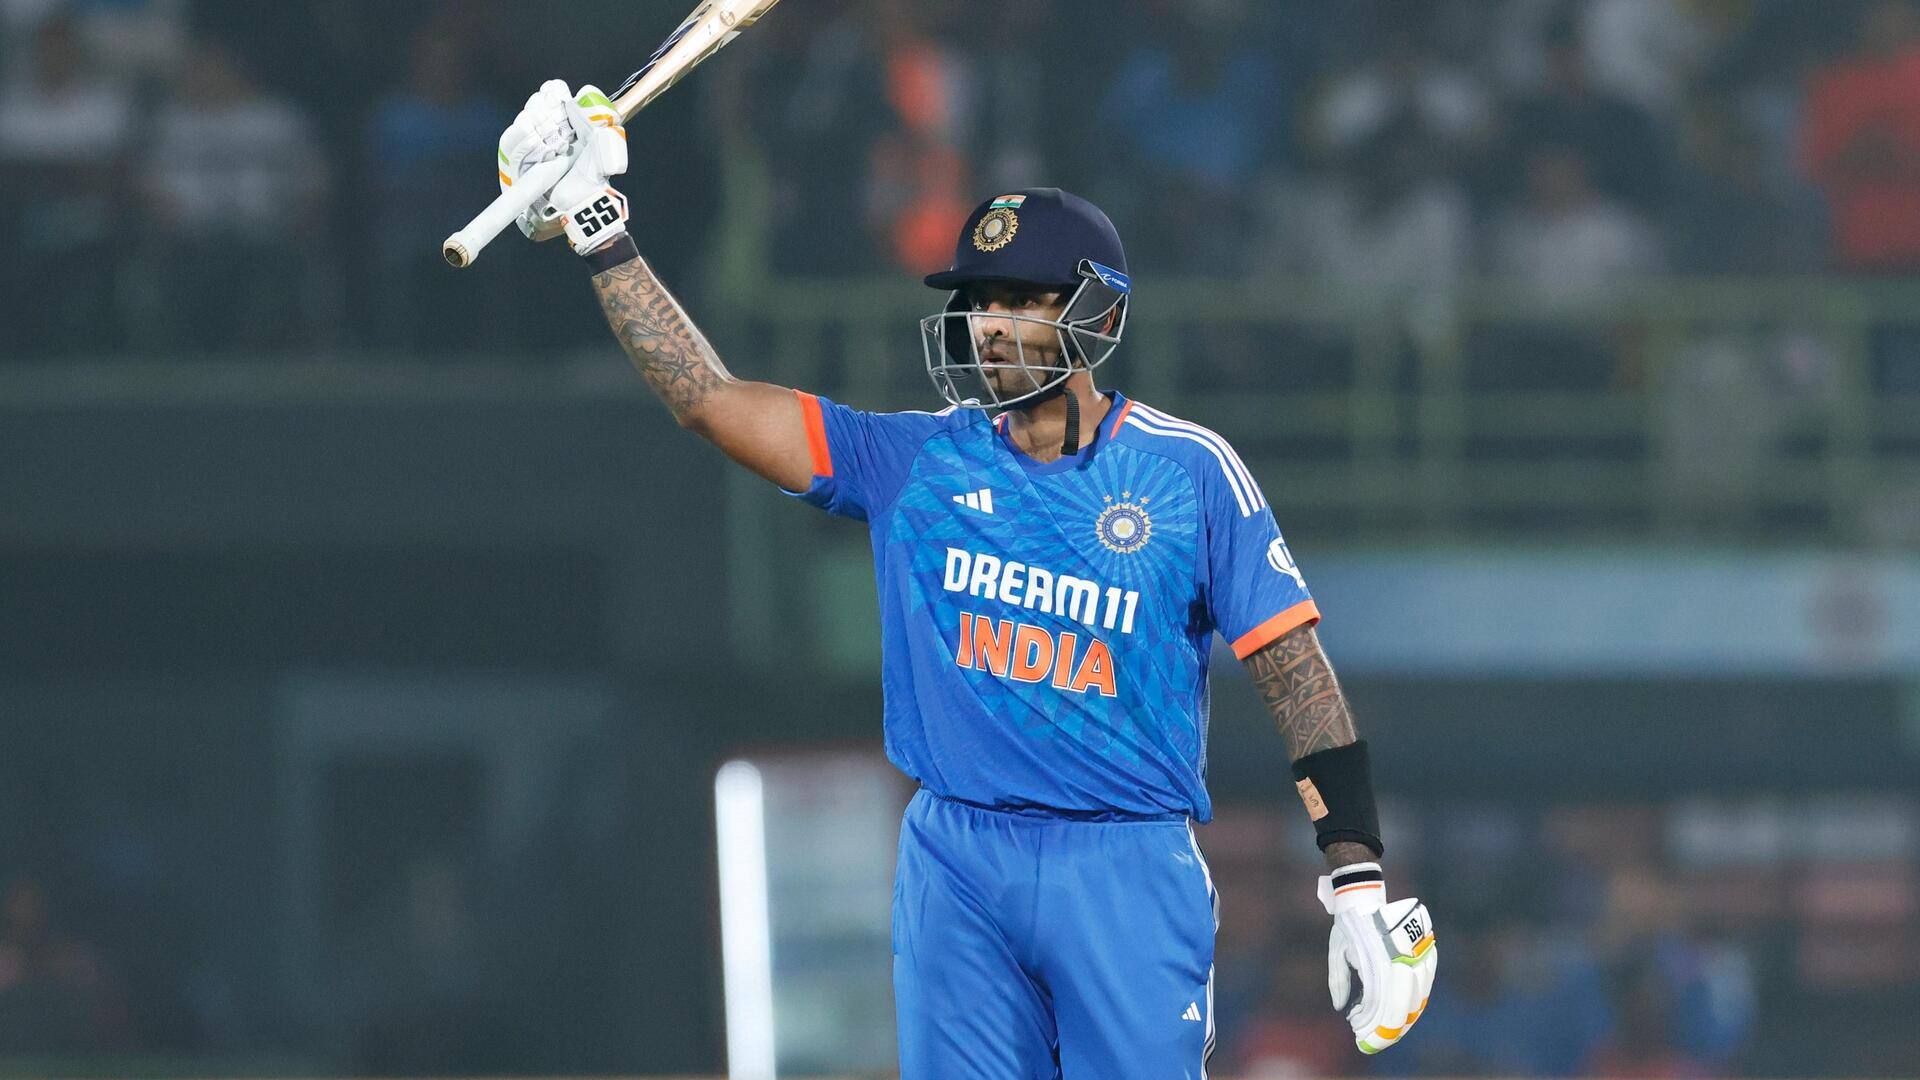 भारत बनाम ऑस्ट्रेलिया: सूर्यकुमार यादव ने जड़ा टी-20 अंतरराष्ट्रीय करियर का 16वां अर्धशतक, जानिए आंकड़े